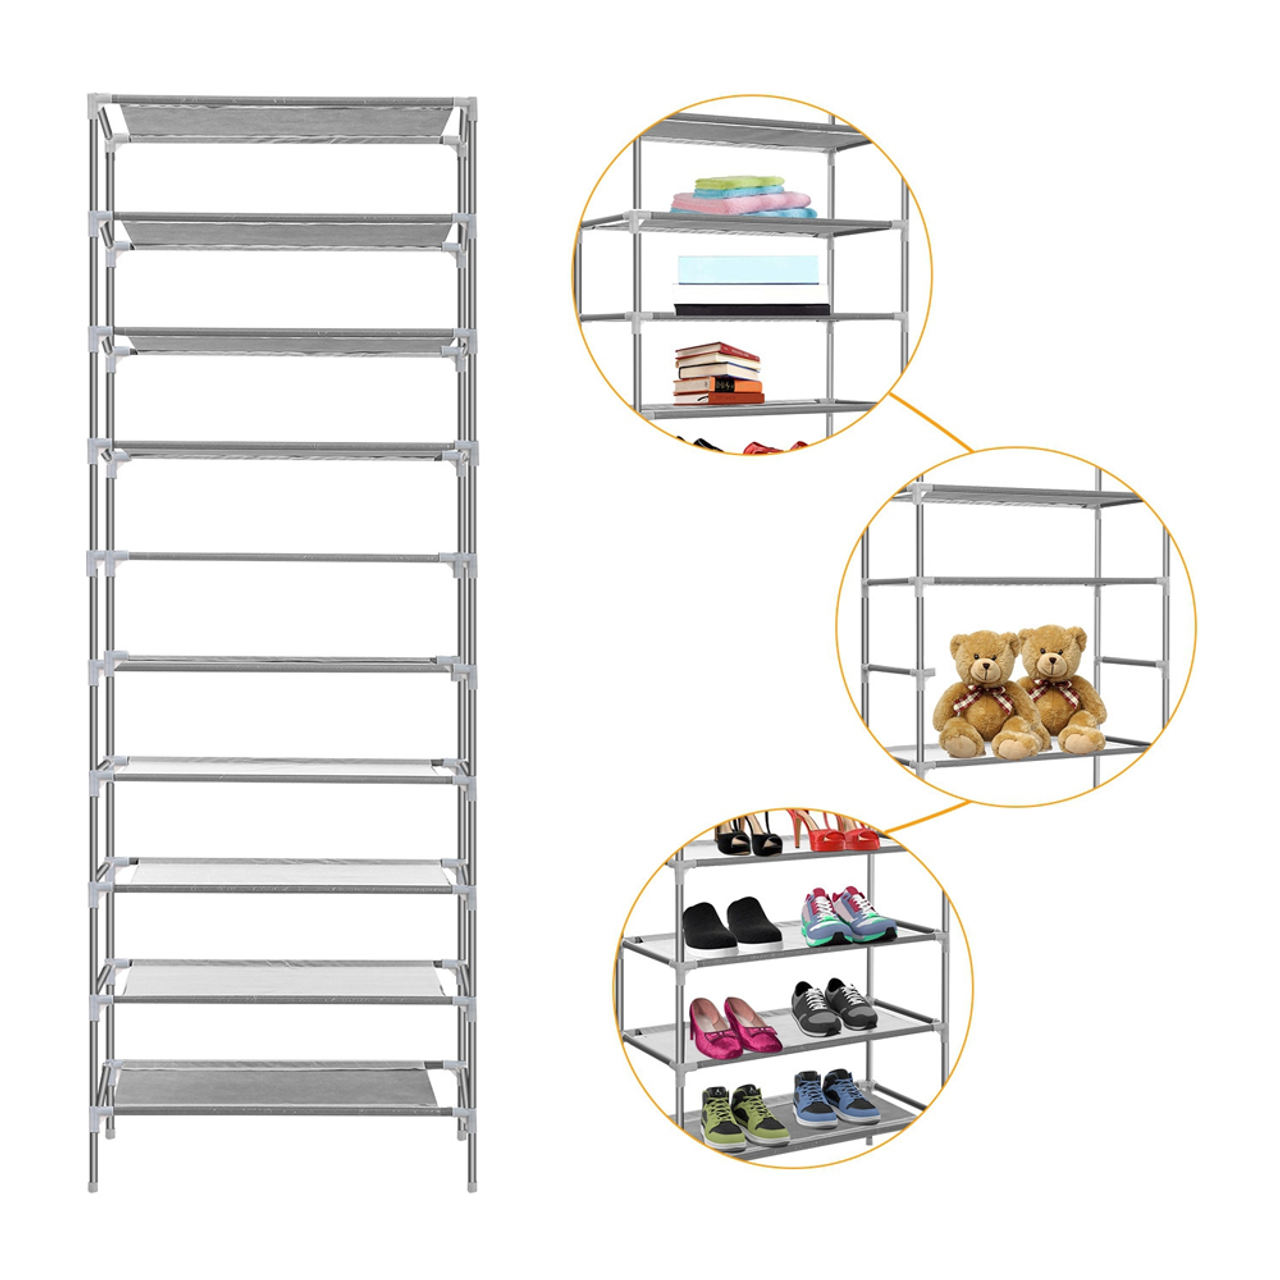 10-Tier Shoe Rack Shelving Unit product image